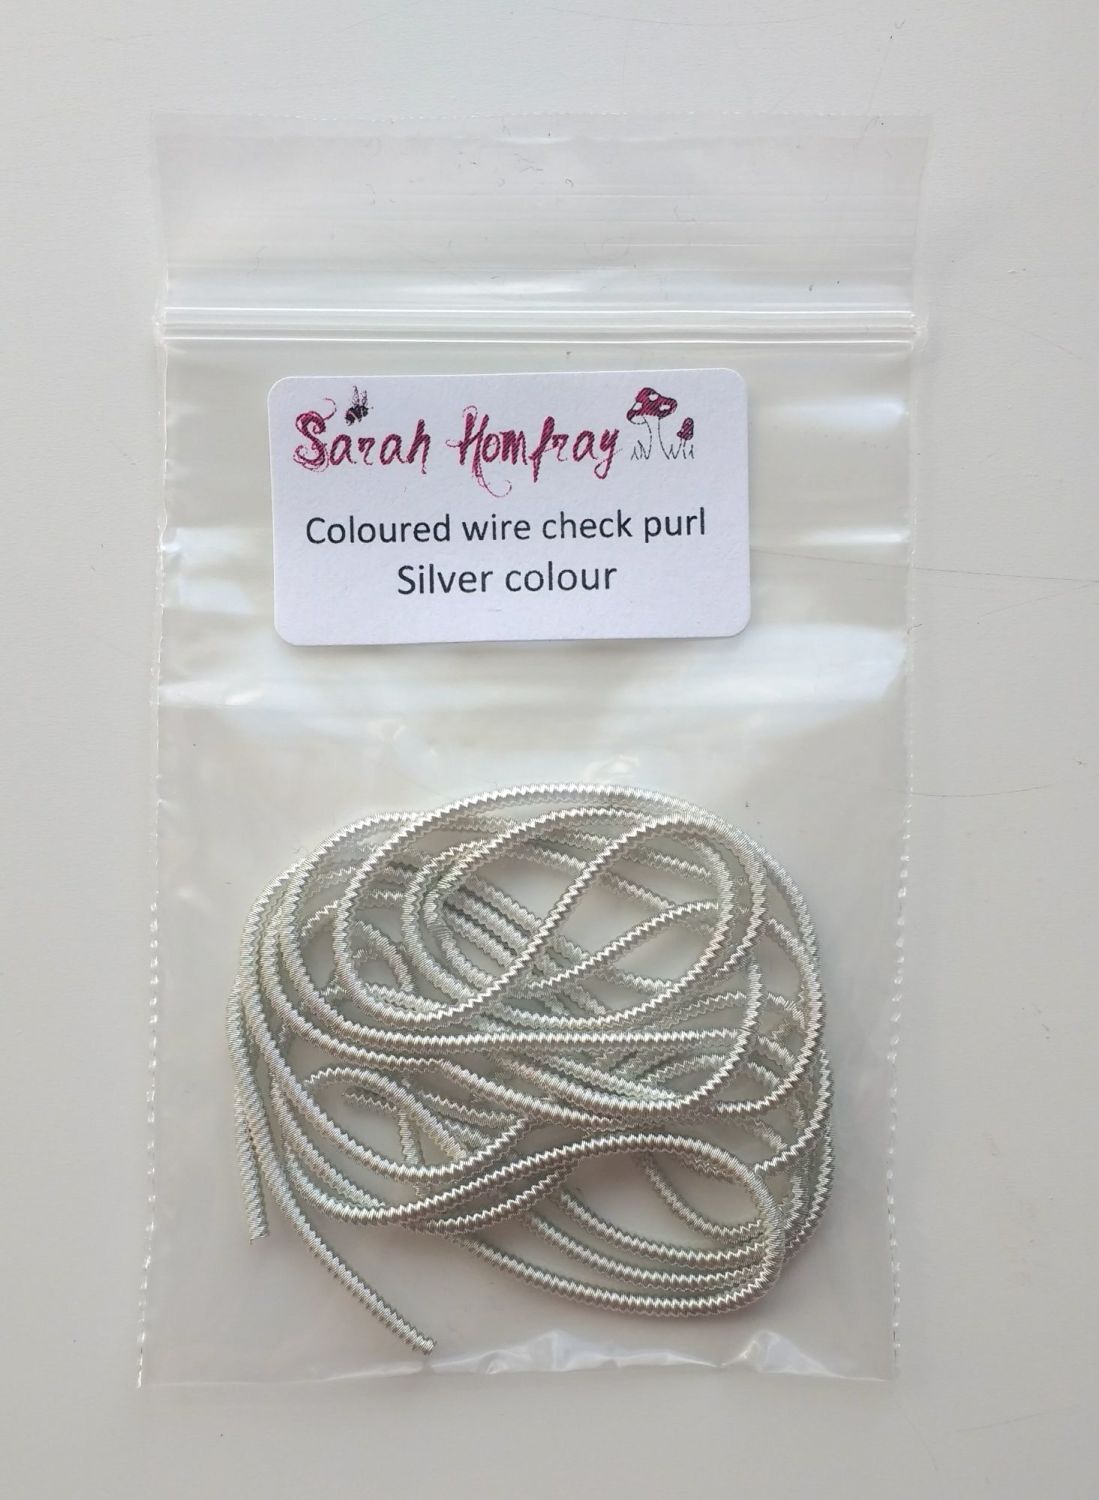 NEW! Coloured Wire check purl no.6 - Silver colour